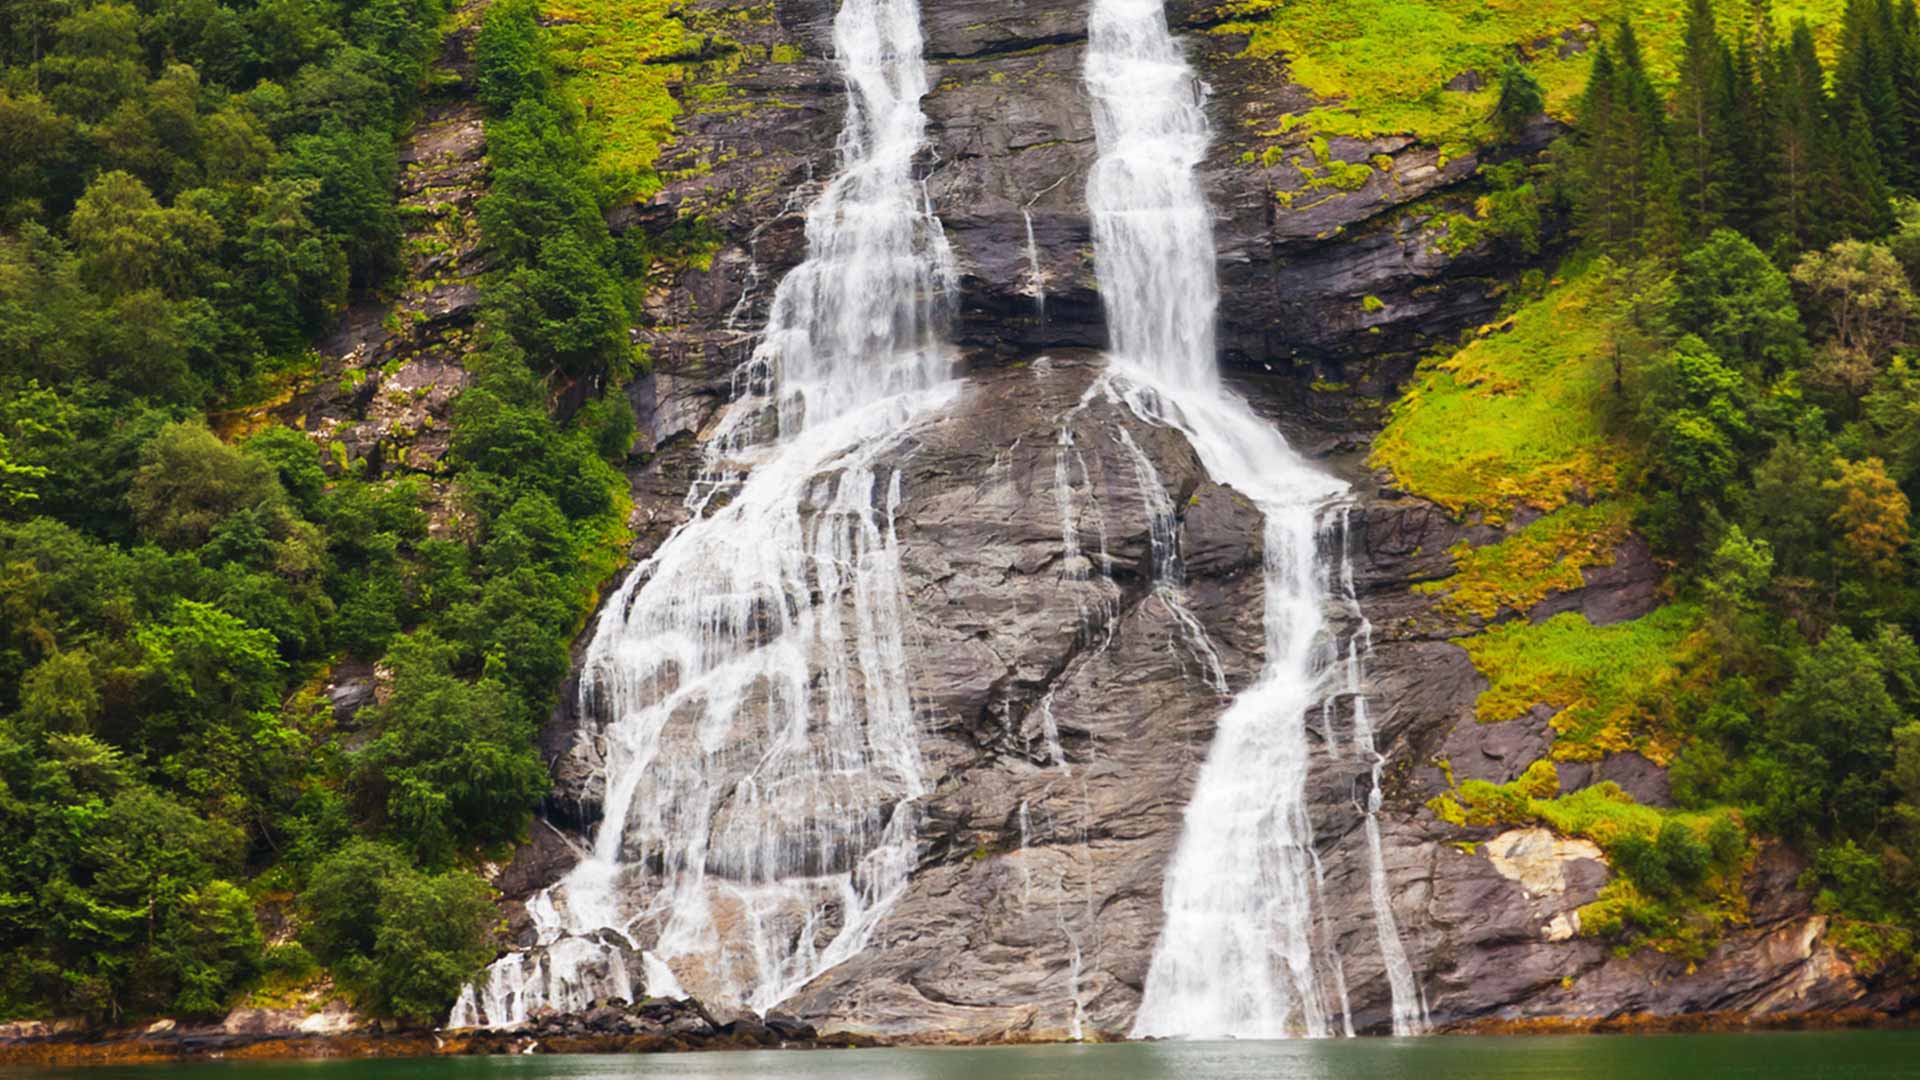 Geirangerfjord waterfall in Norway